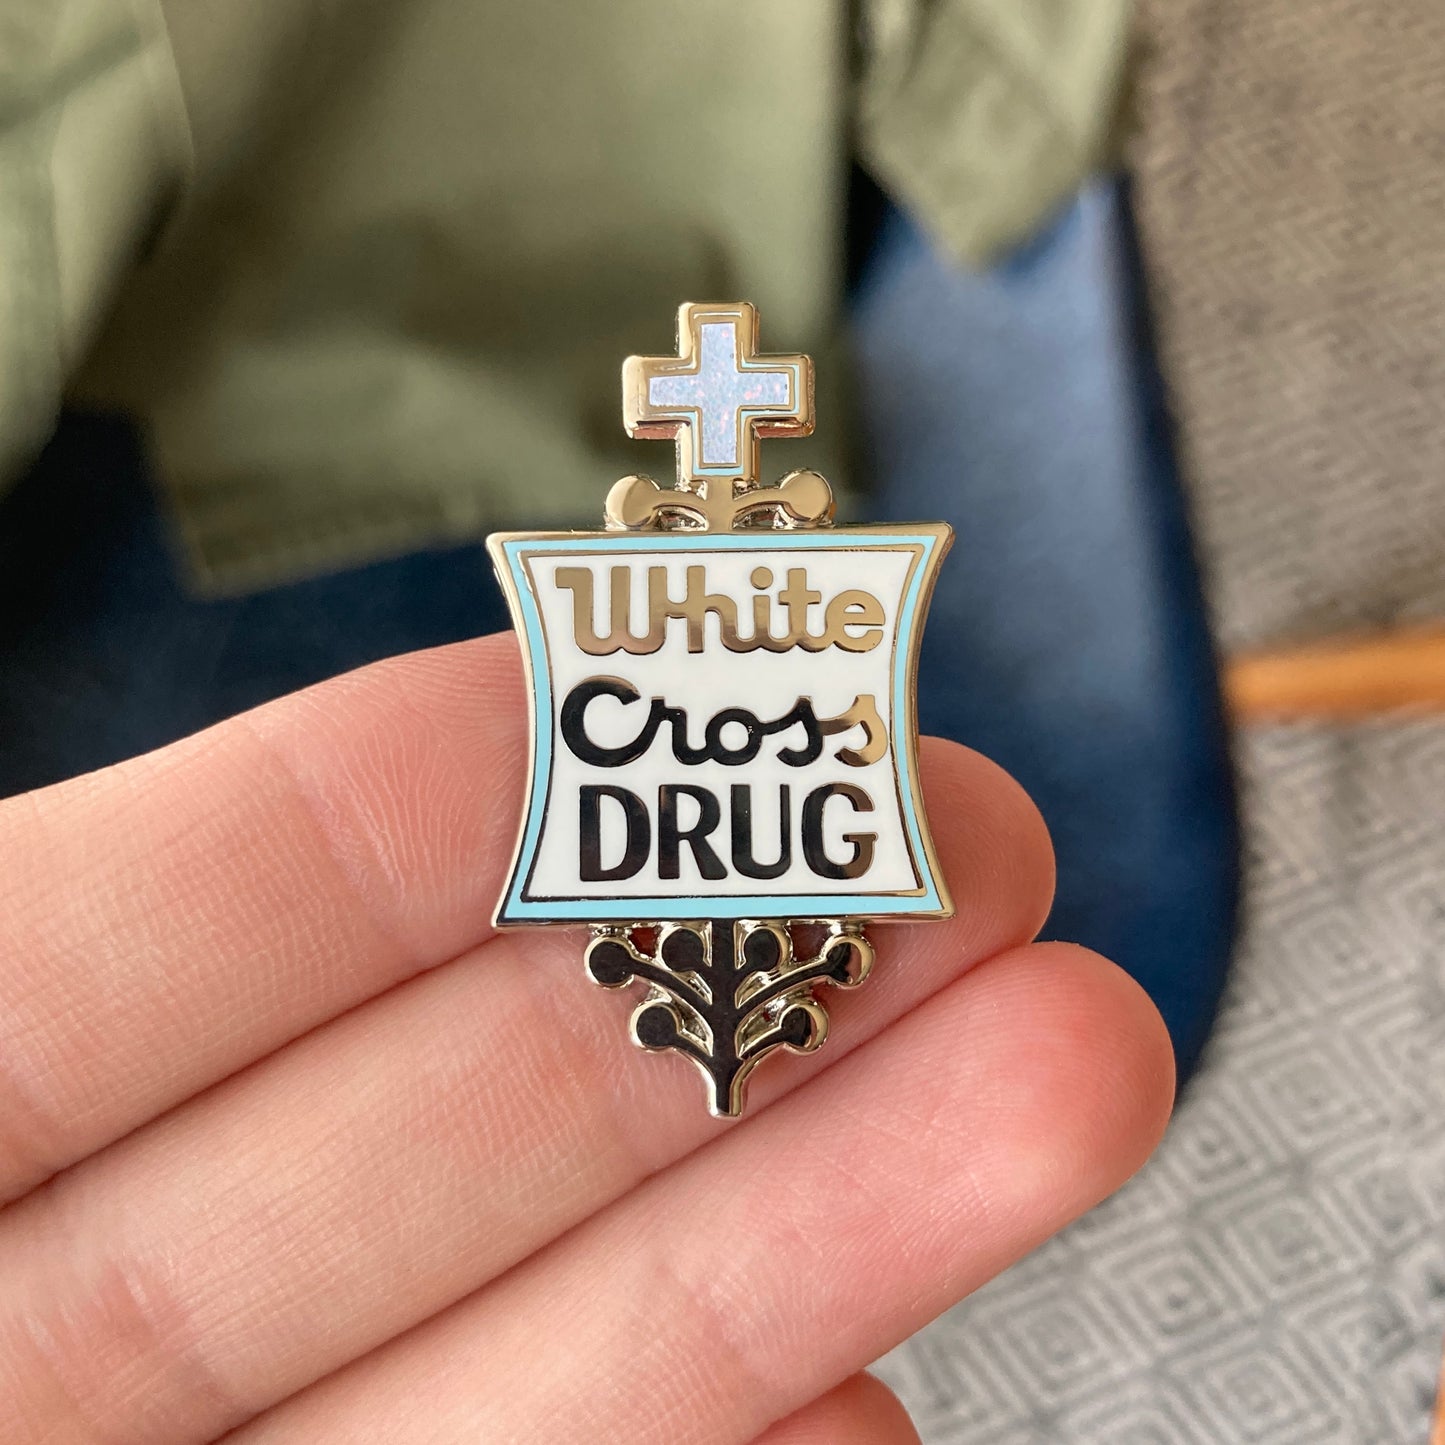 White Cross Drugs